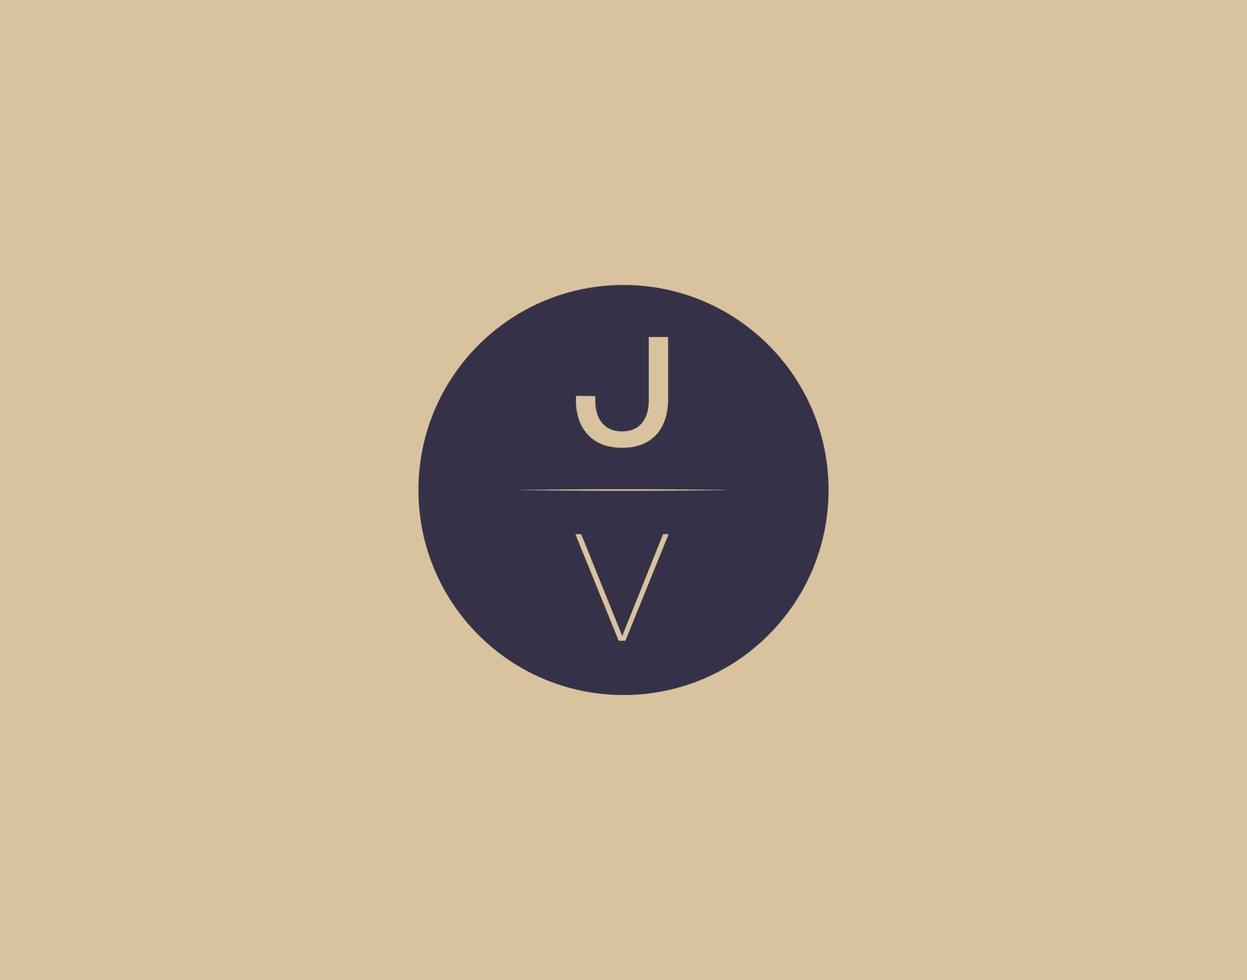 Imágenes de vector de diseño de logotipo elegante moderno de letra jv